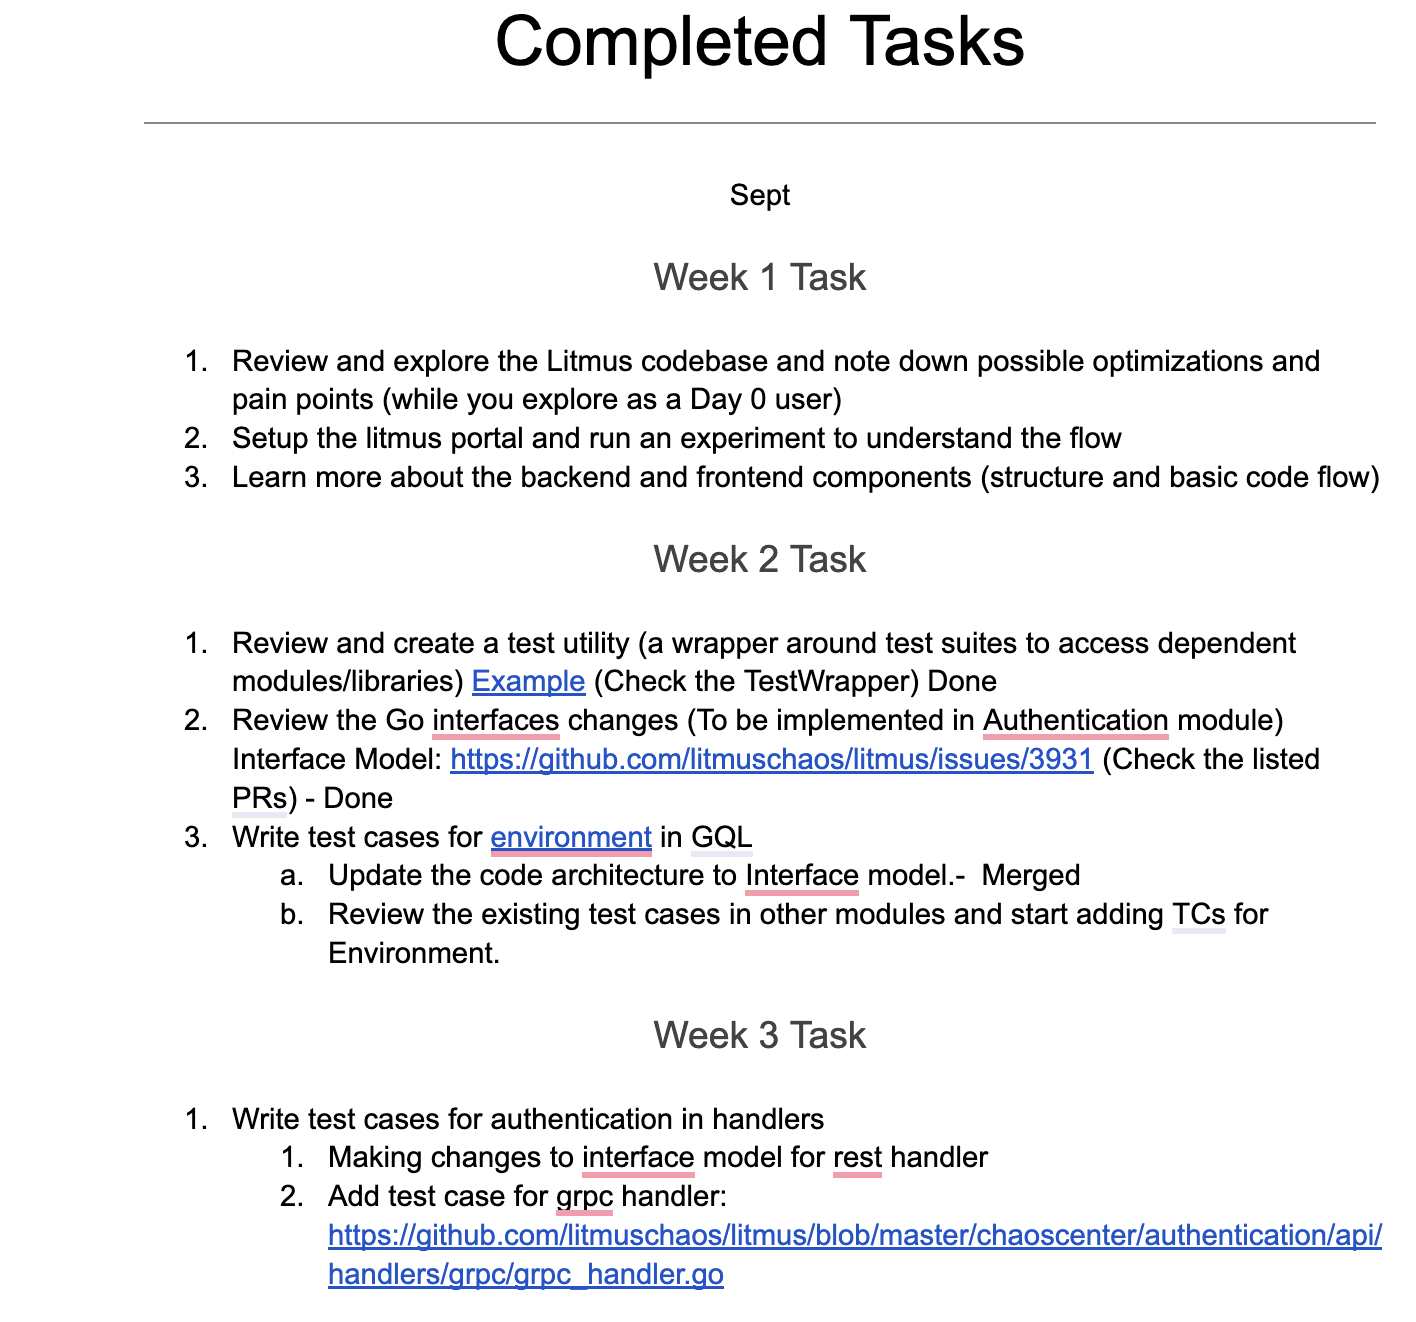 Screenshot showing 3 weeks completed tasks during September